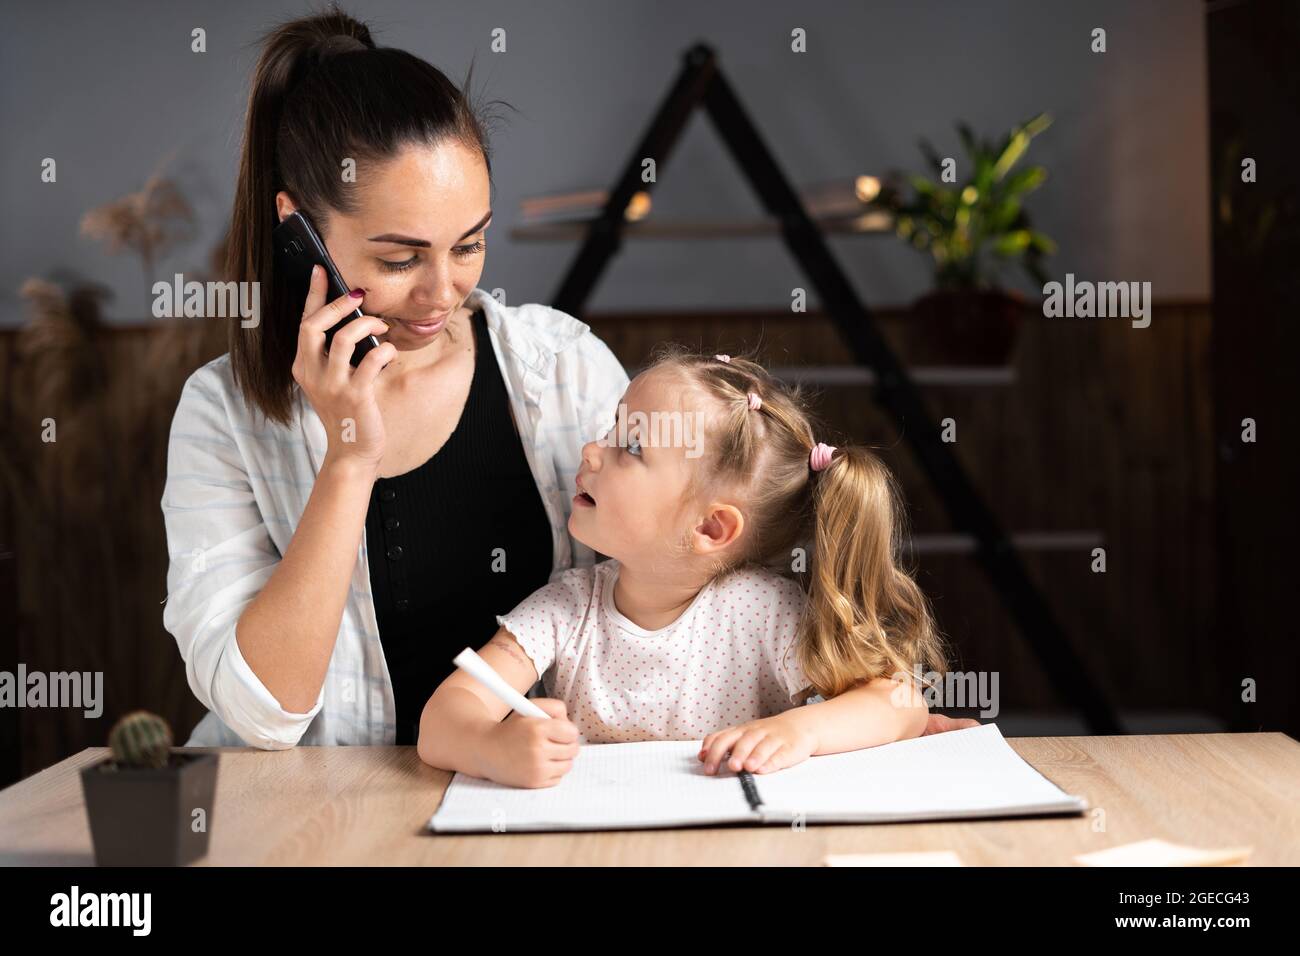 Eine junge kaukasische Mutter und ihre Tochter sitzen abends zu Hause am Tisch und machen gemeinsam Hausaufgaben. Ein junges Kindermädchen hilft dem Kind d Stockfoto